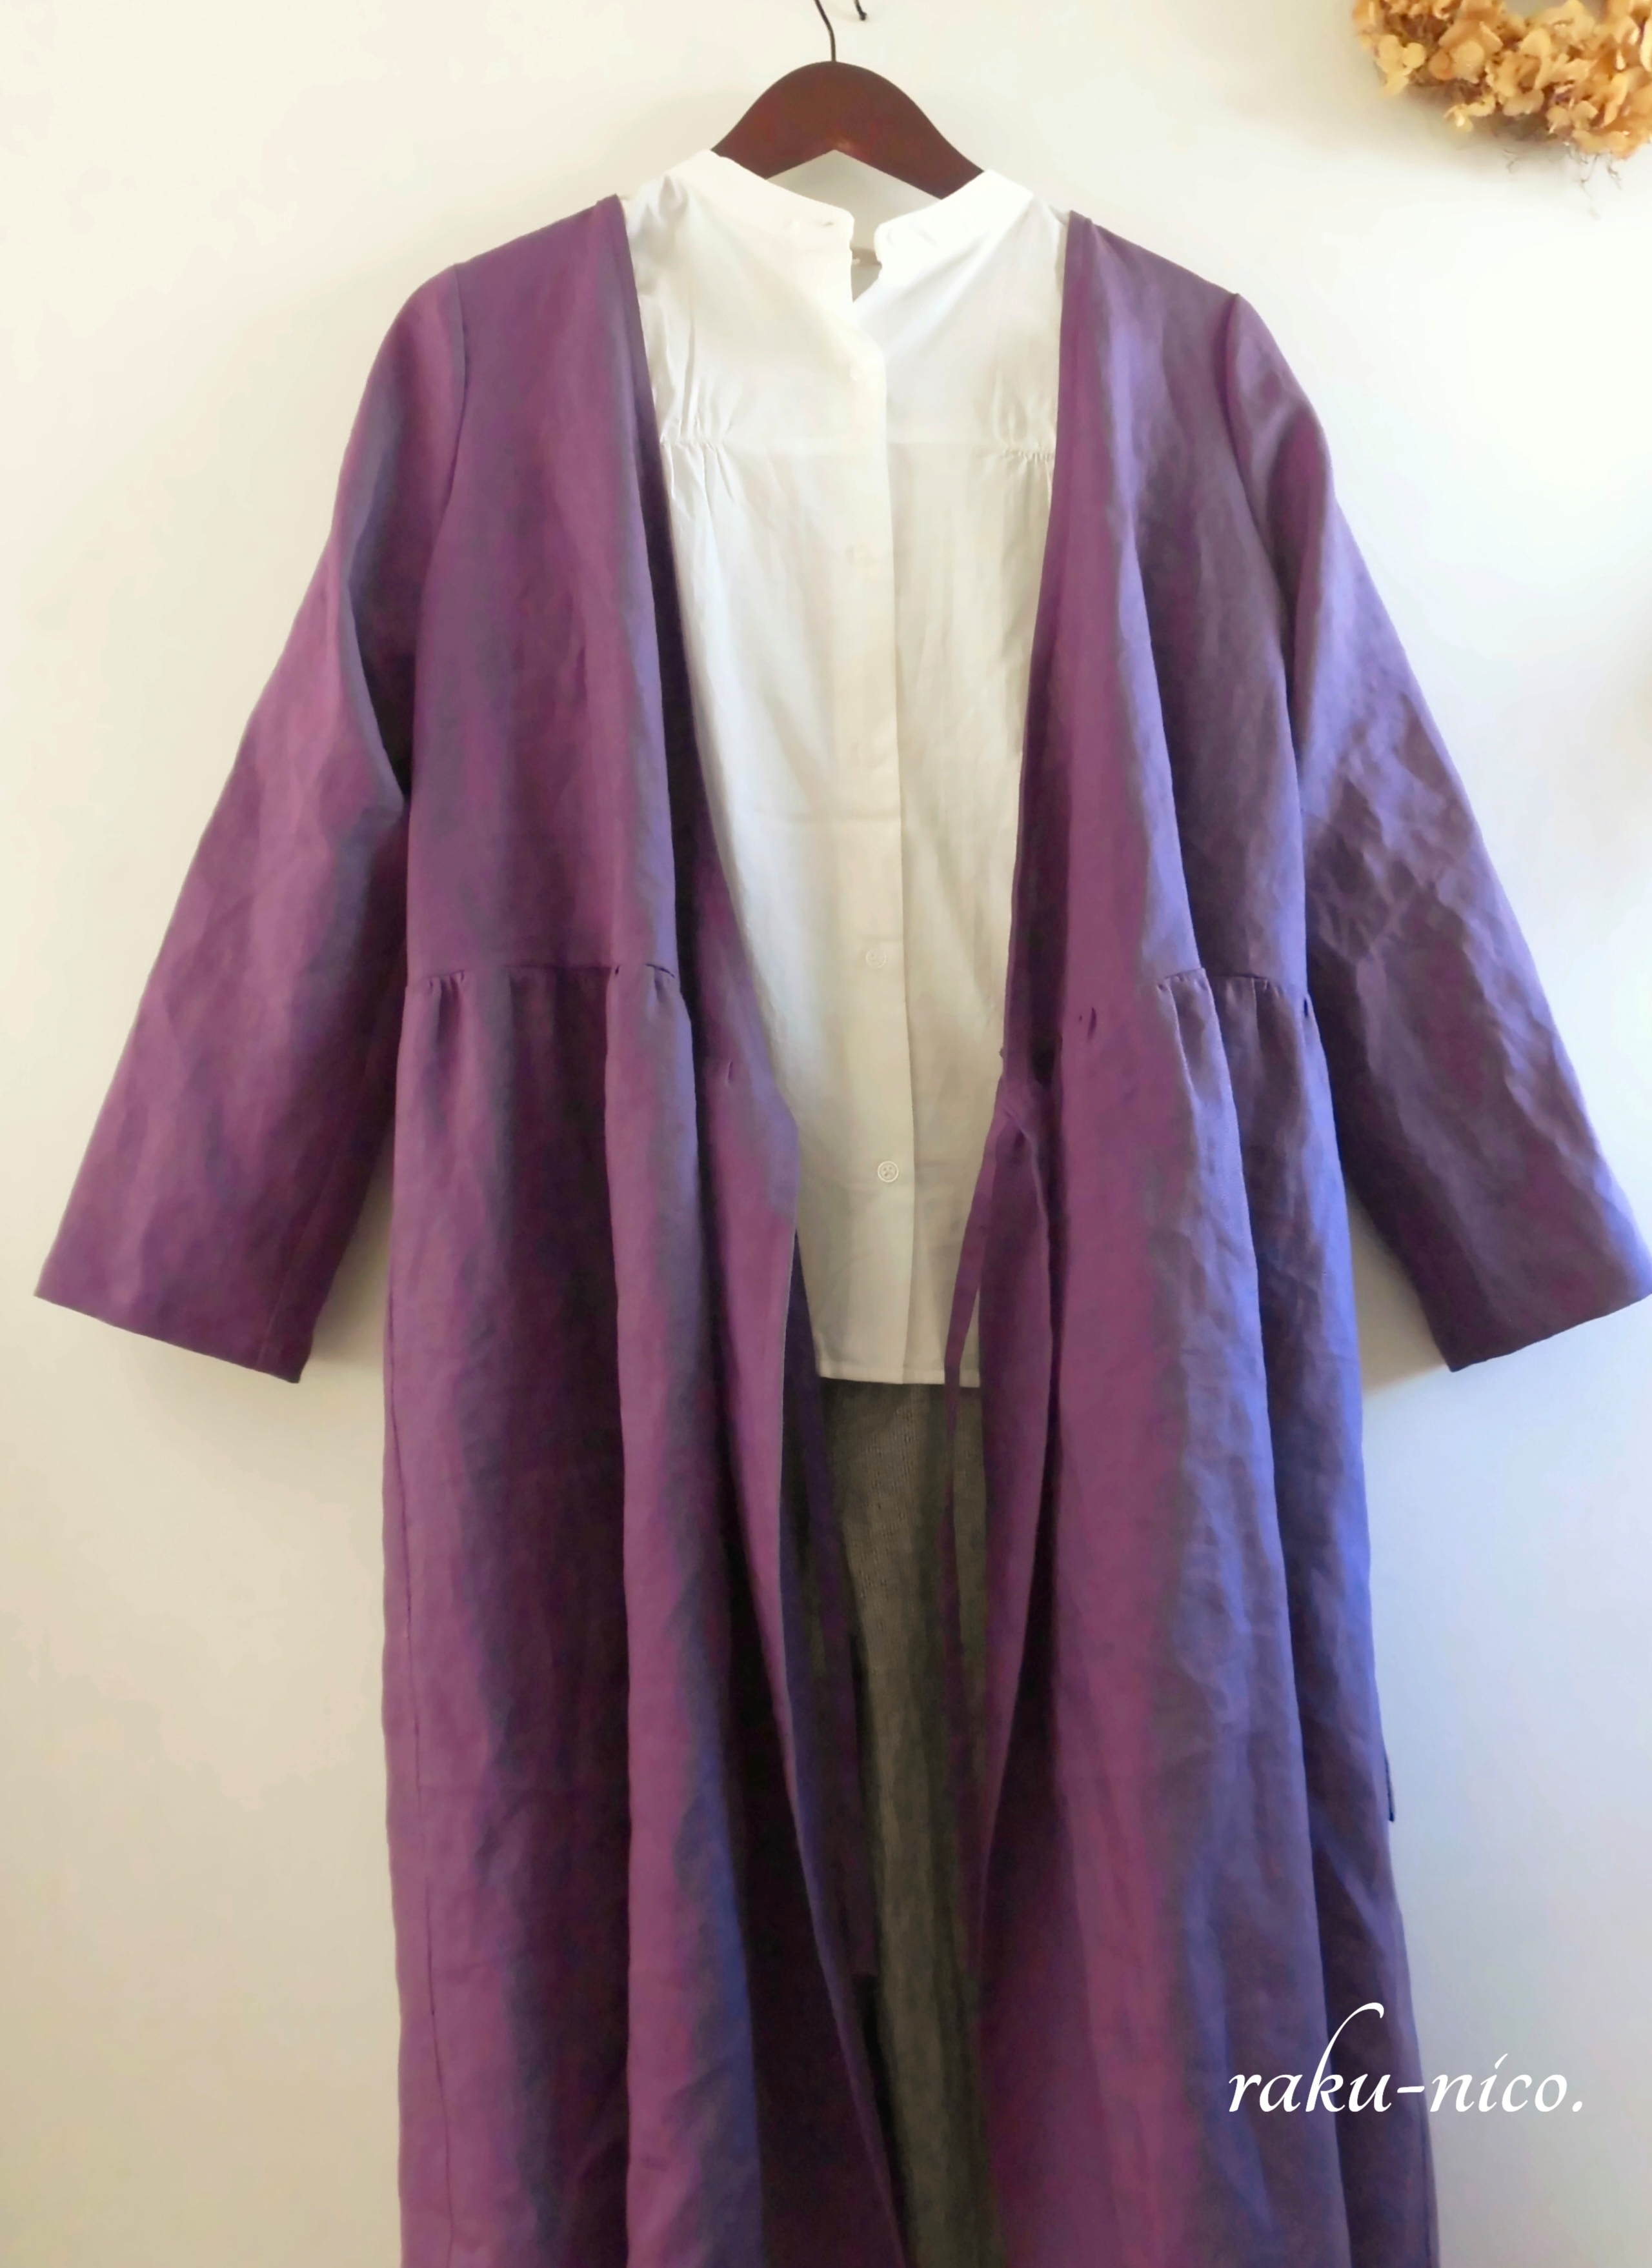 カシュクールワンピース リネン100 紫 ぶどう色 コート Iichi ハンドメイド クラフト作品 手仕事品の通販